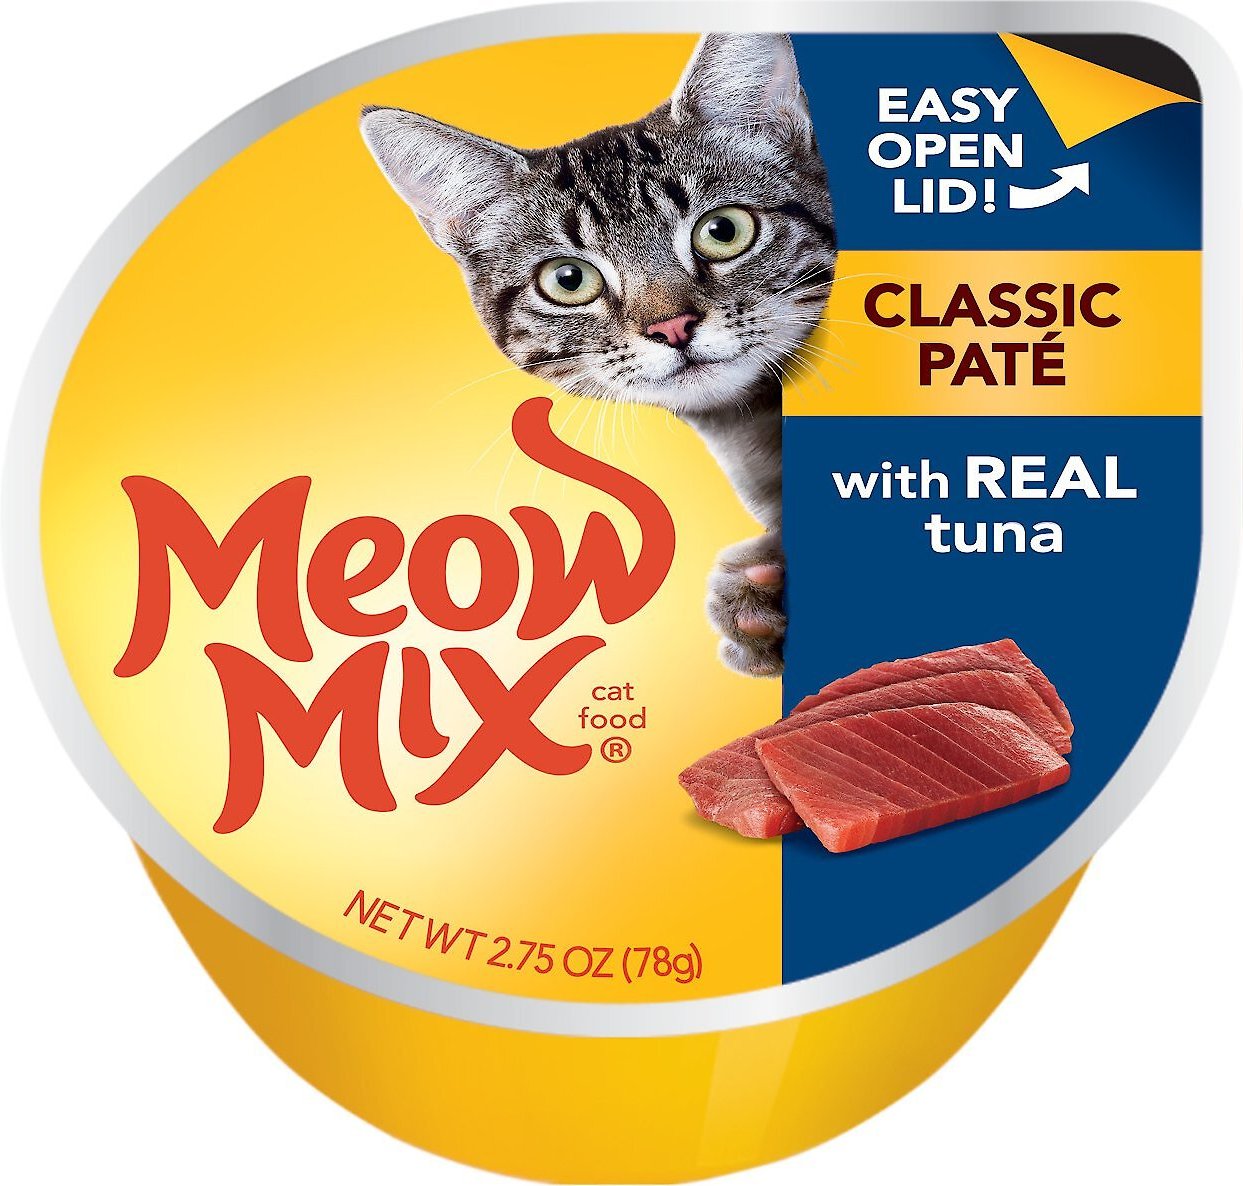 tuna pate cat food